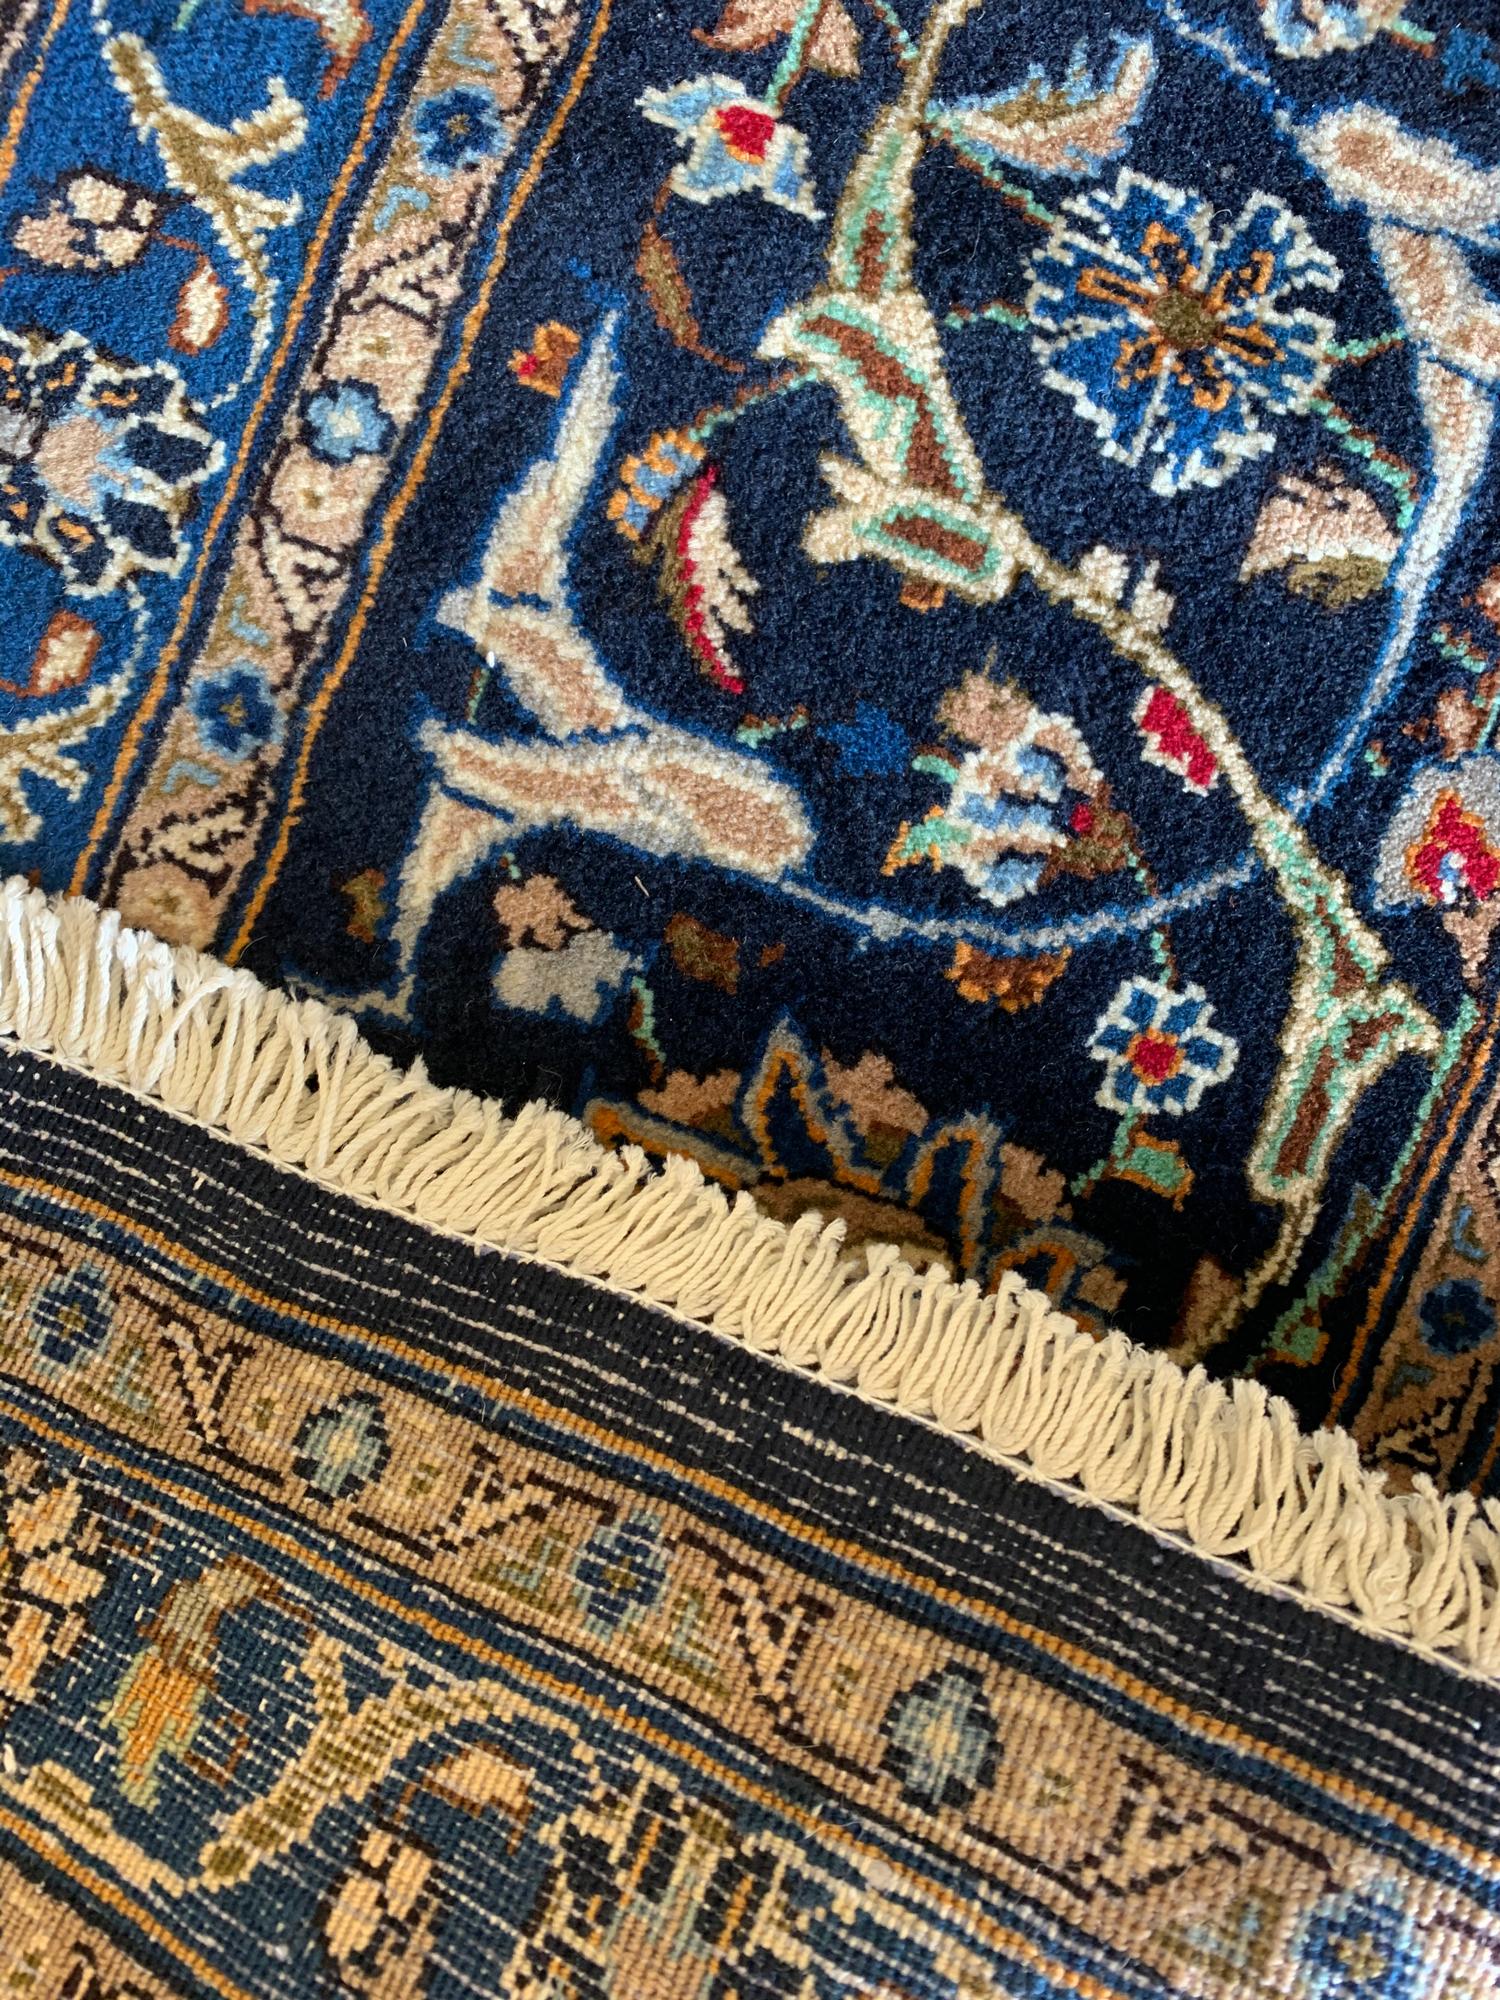 Large Oriental5 Carpet Rug Vintage Wool Blue Beige Rug For Sale 3